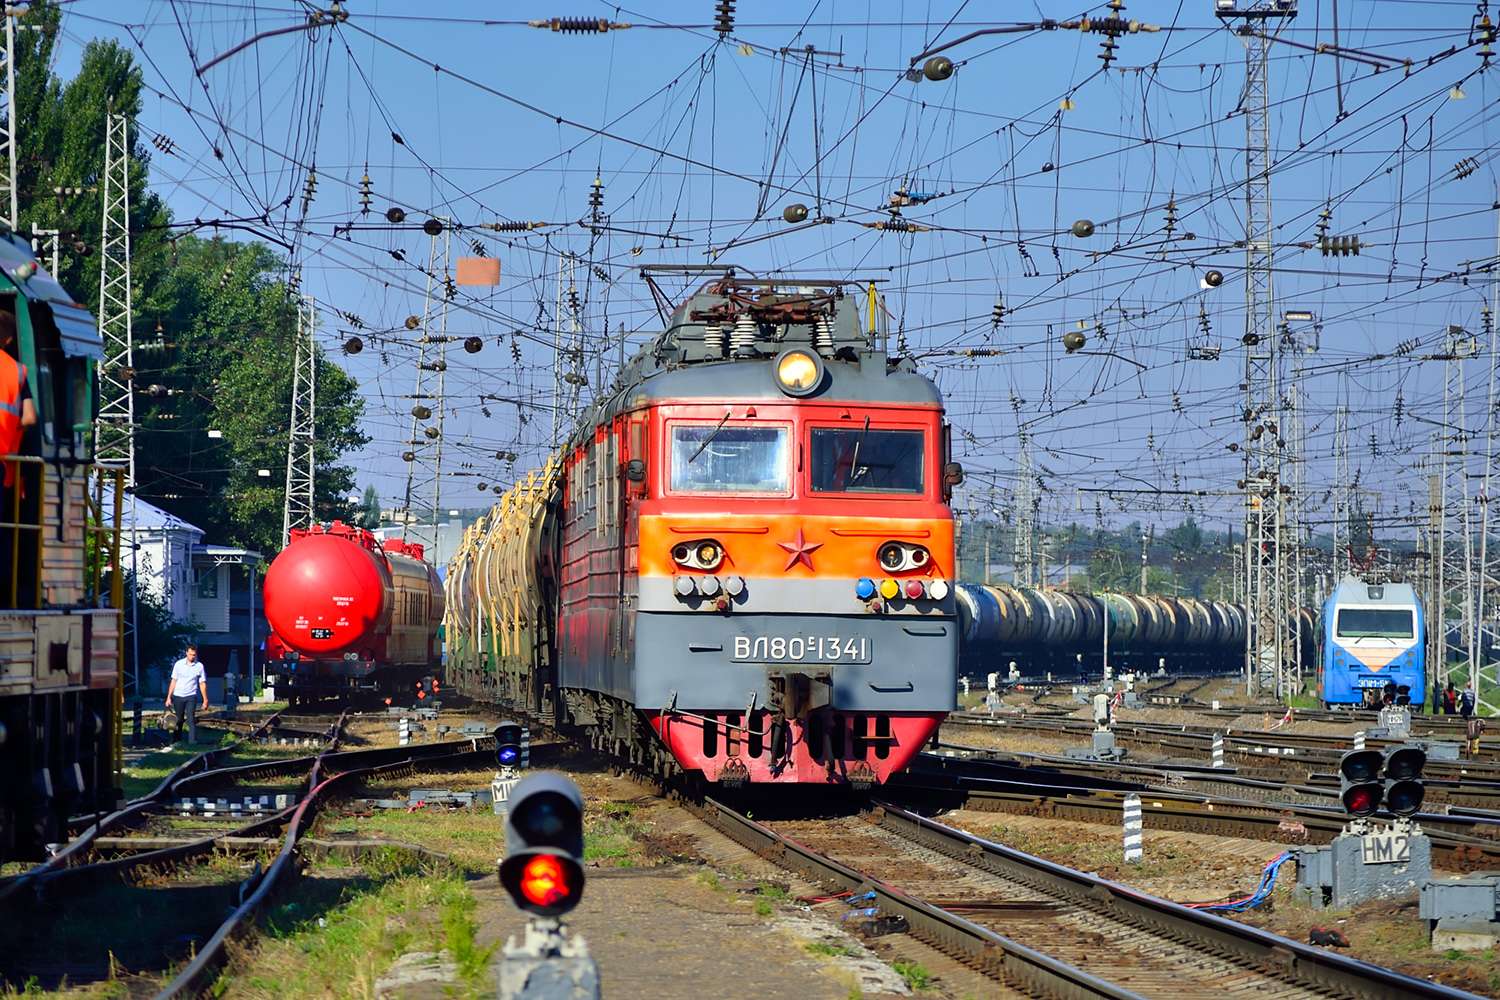 elektrische locomotief vl 80s-1341 puzzel online van foto